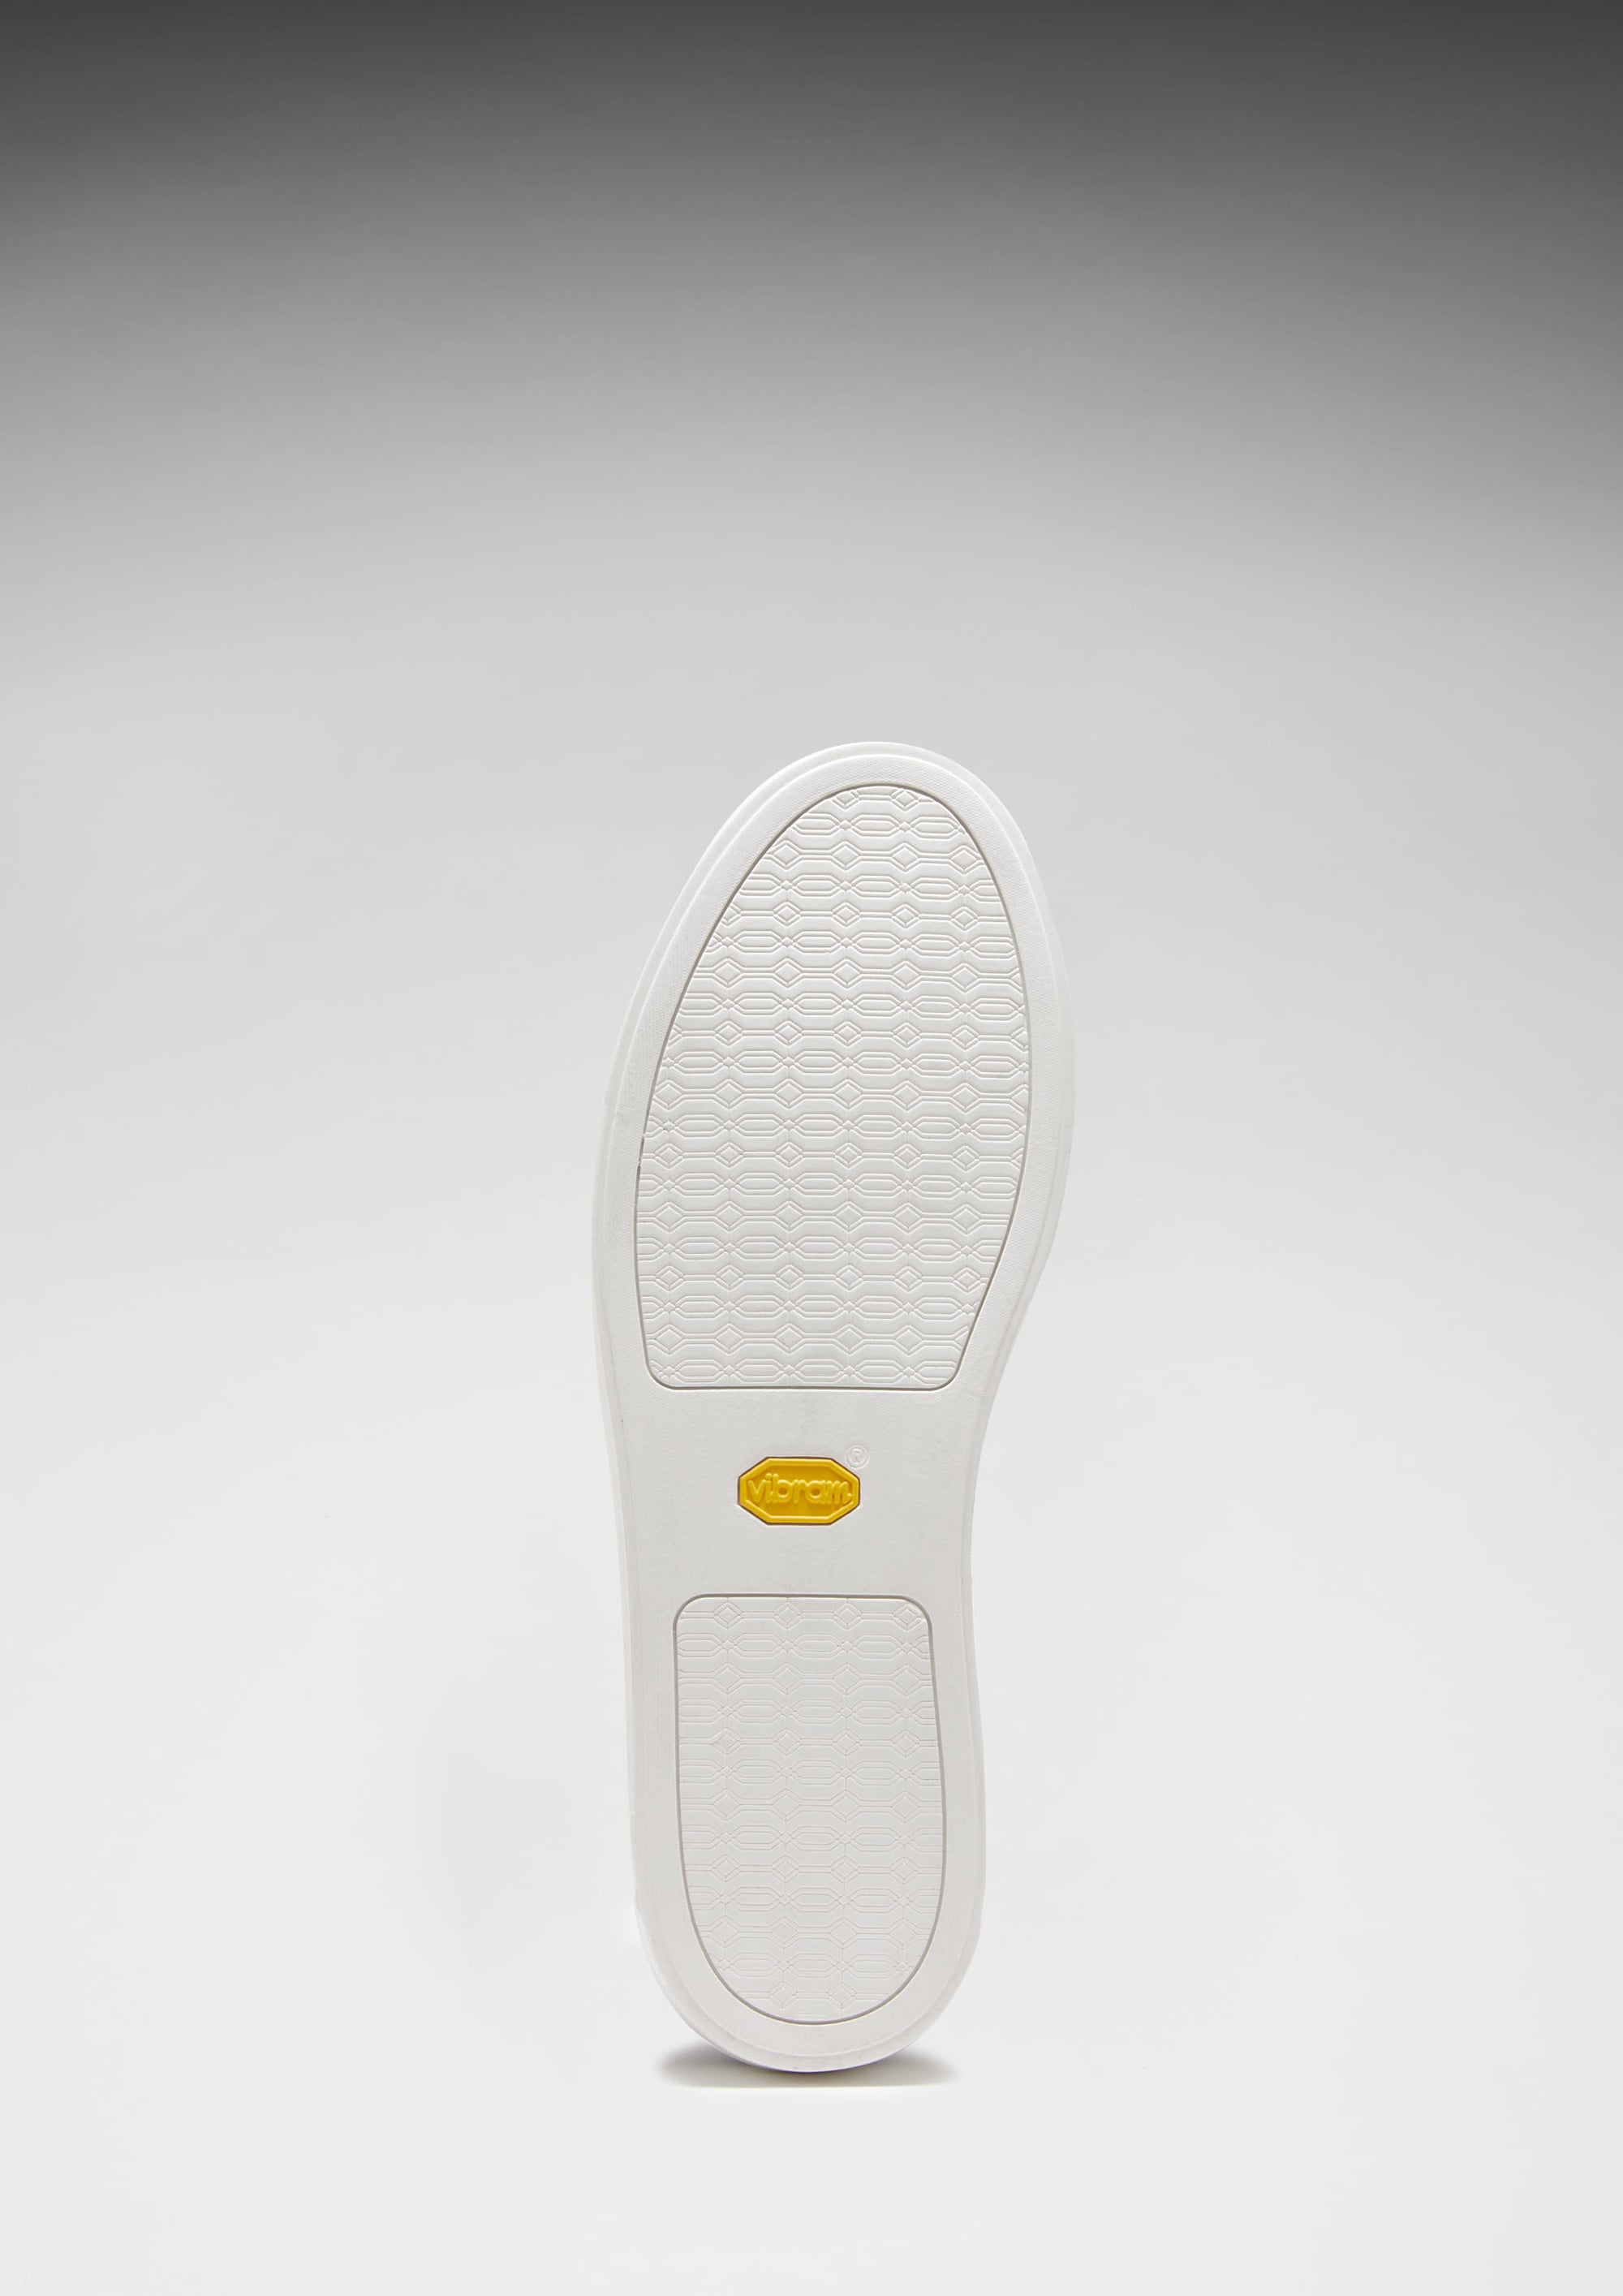 Slip-on Sneaker Loafers, slate grey suede